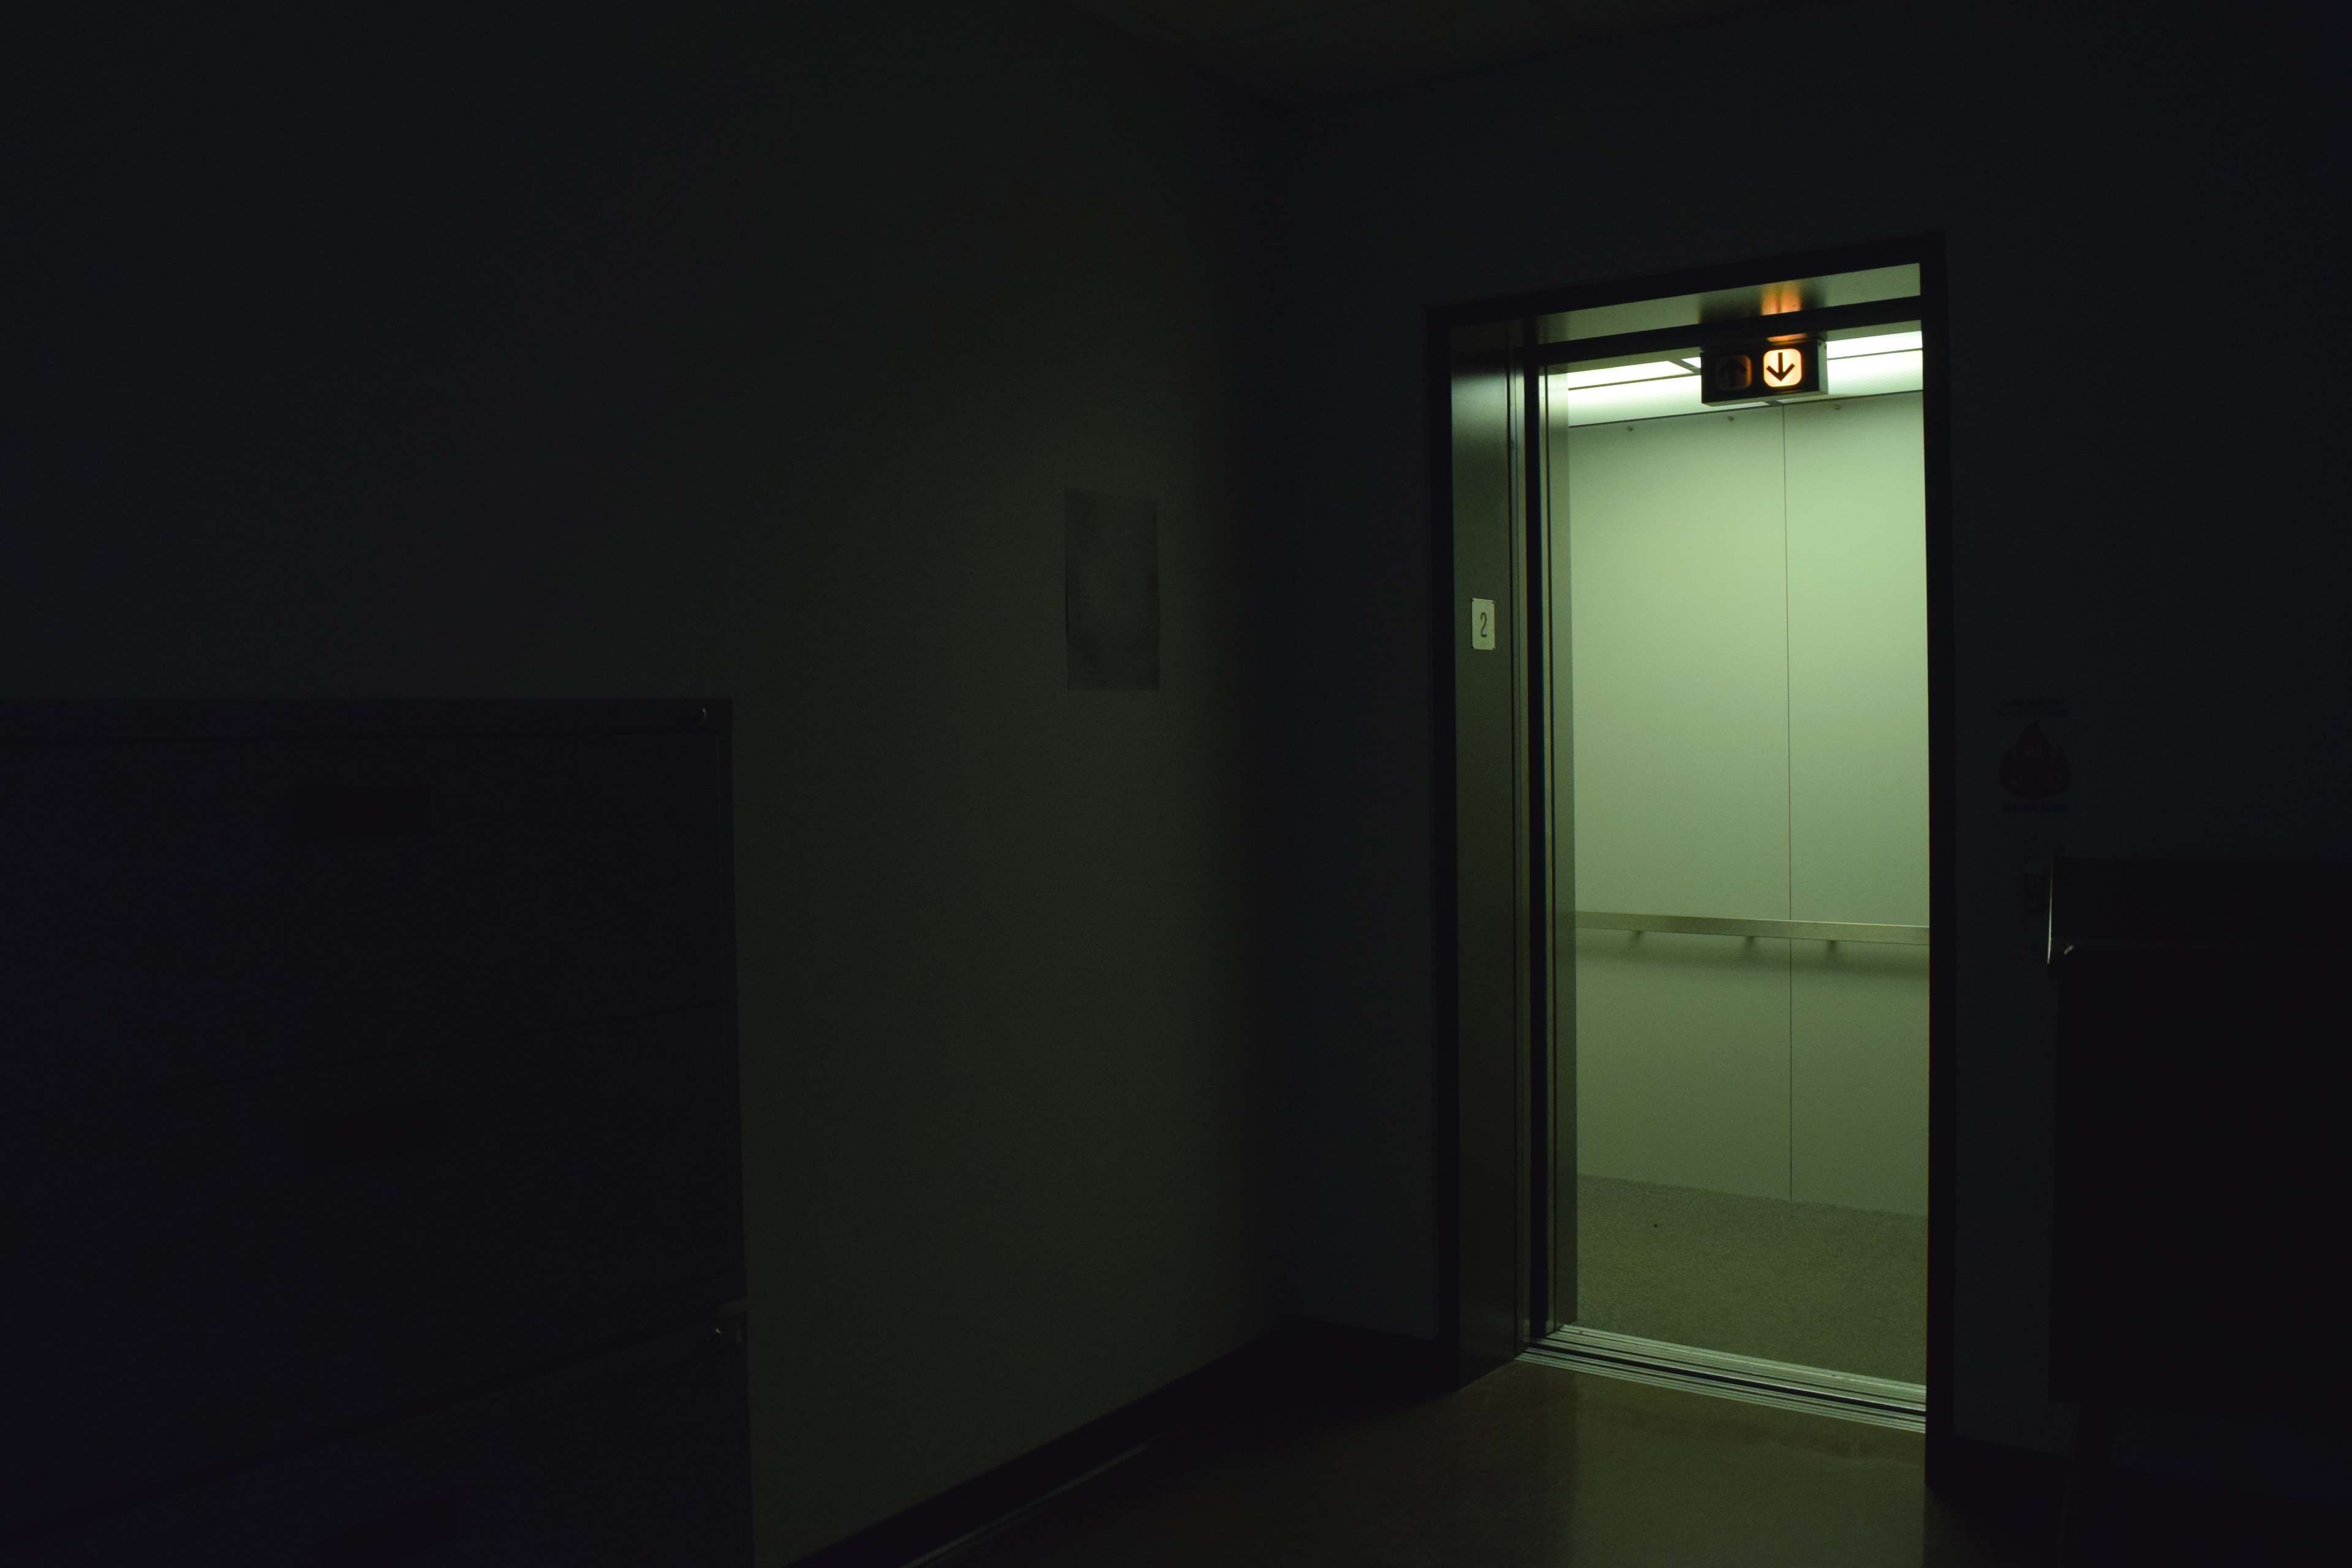 A dark hallway with an open door - Creepy